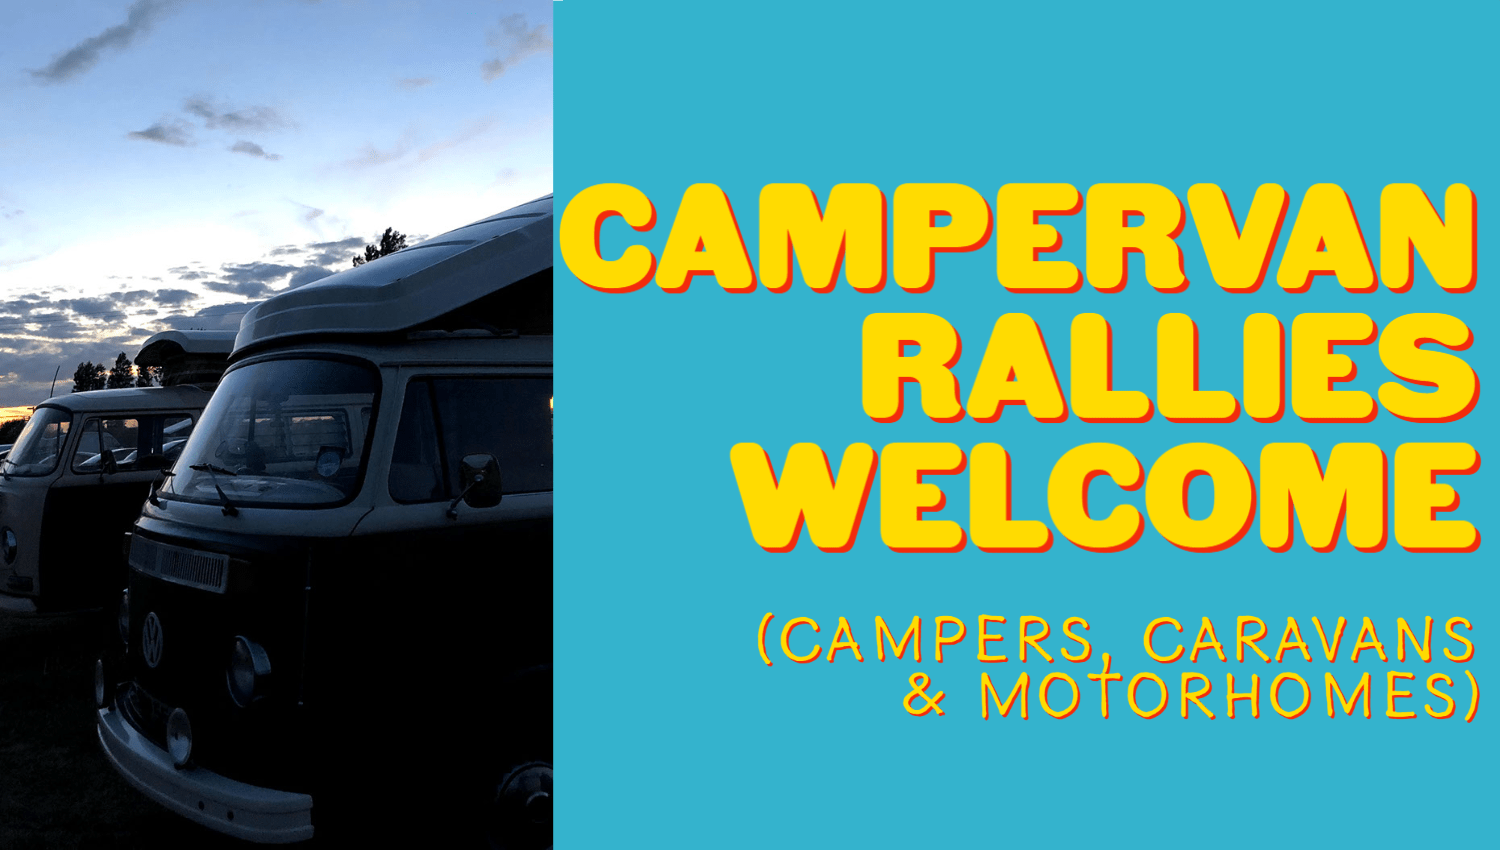 Campervans, caravans and motorhomes welcome